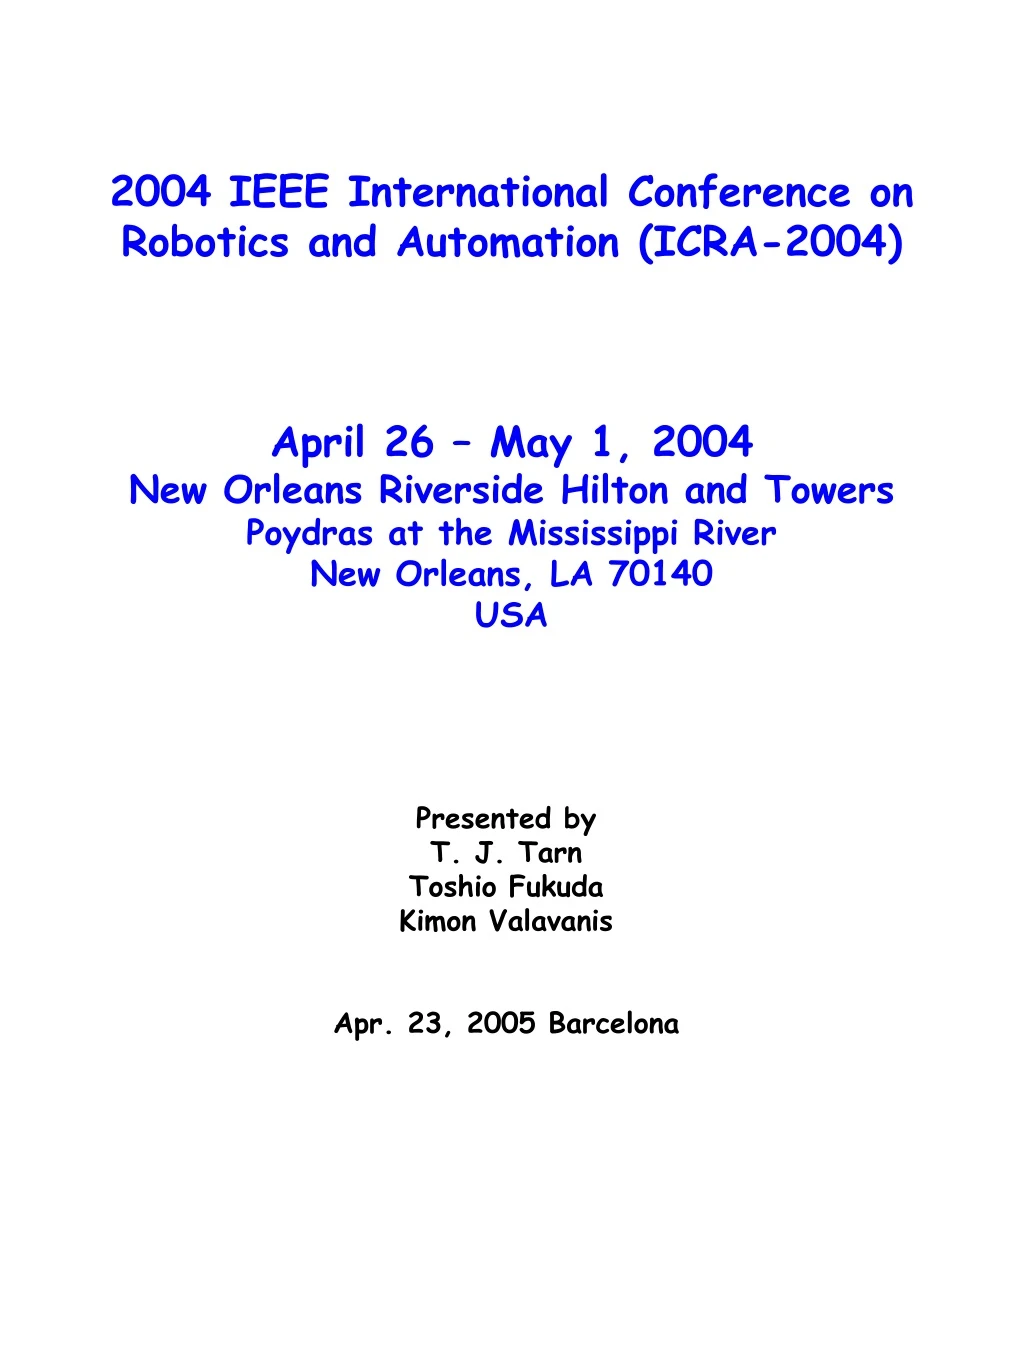 2004 ieee international conference on robotics